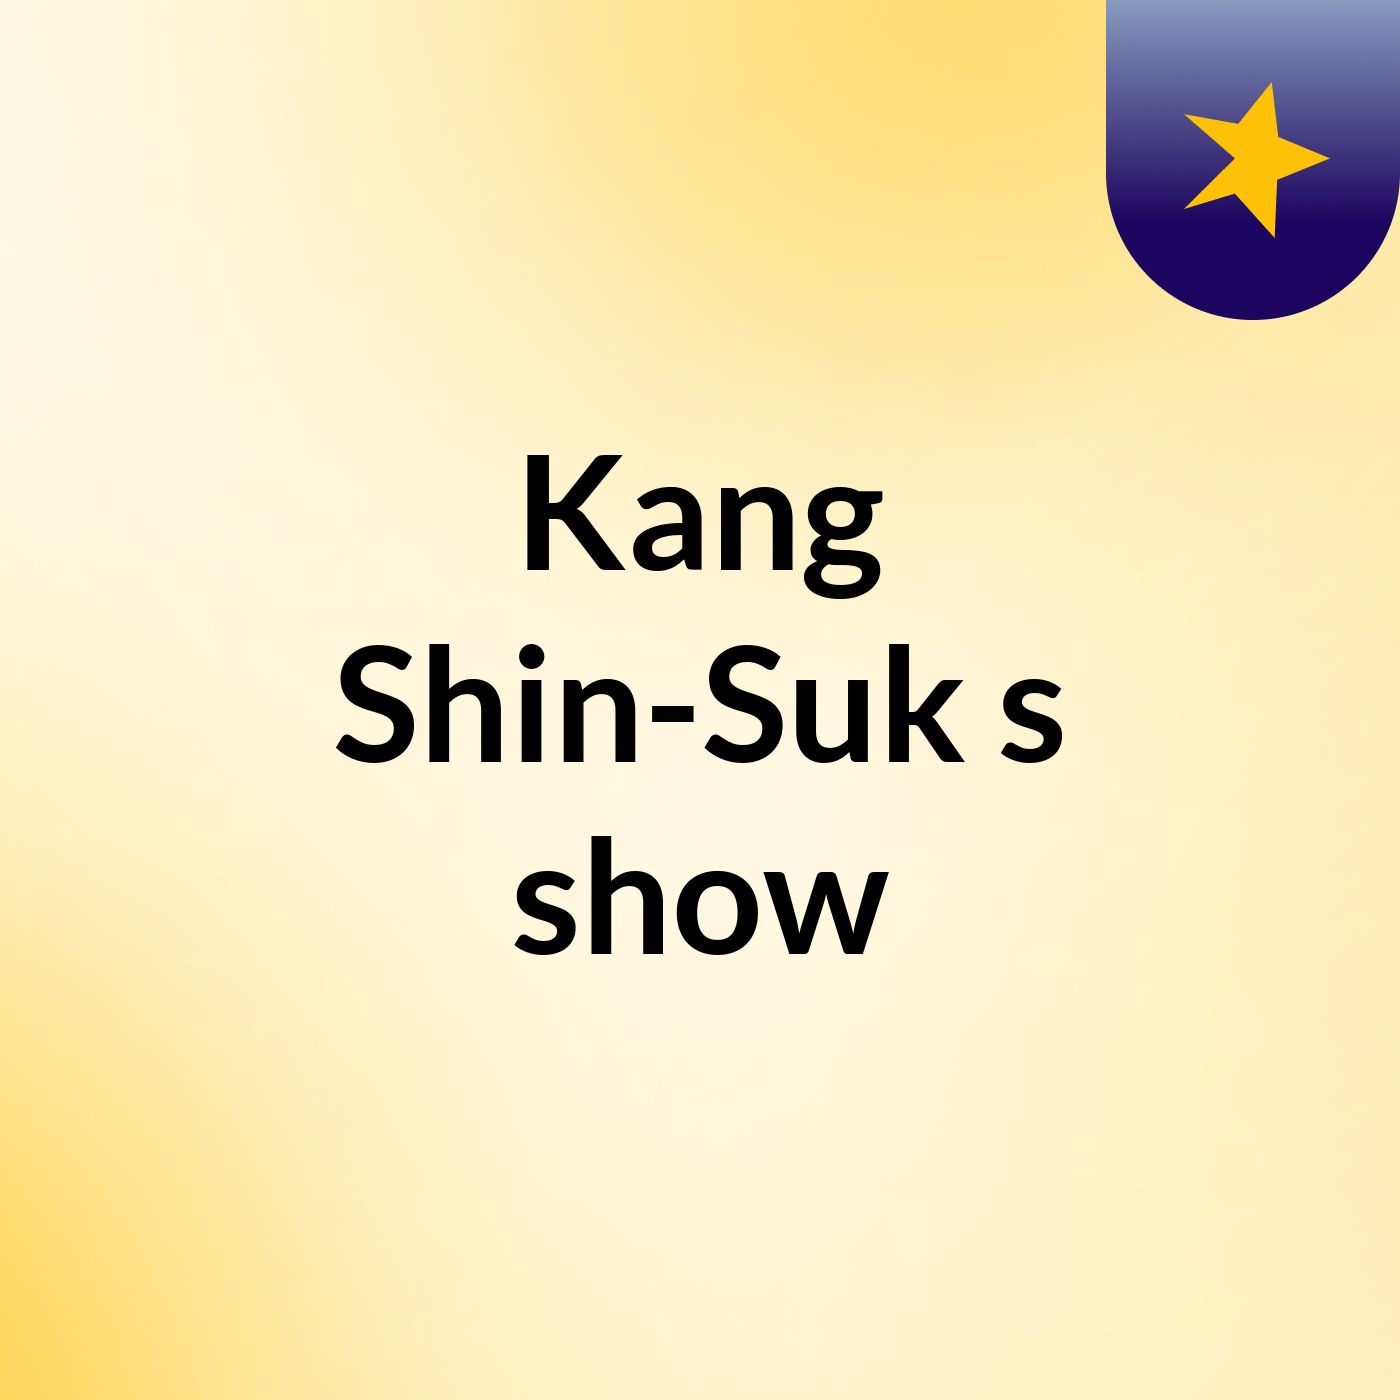 Kang Shin-Suk's show